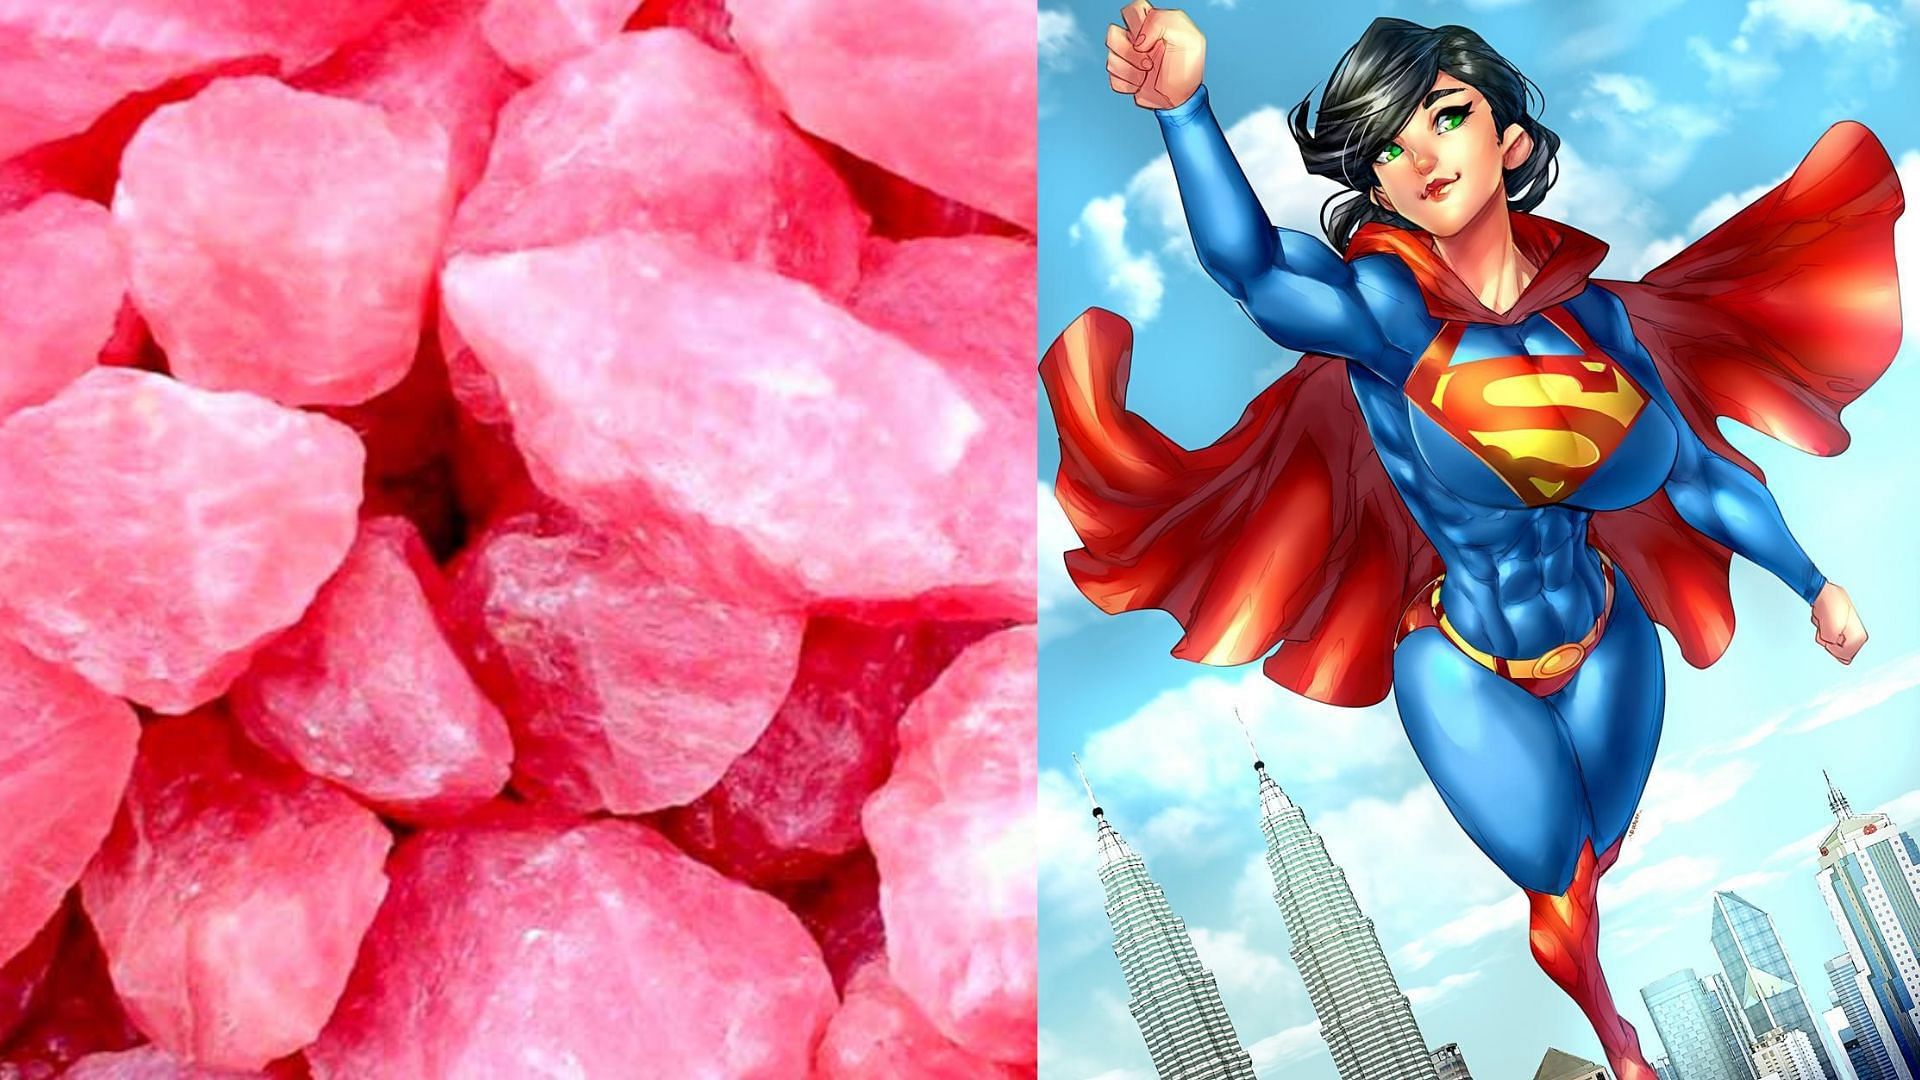 What is pink kryptonite